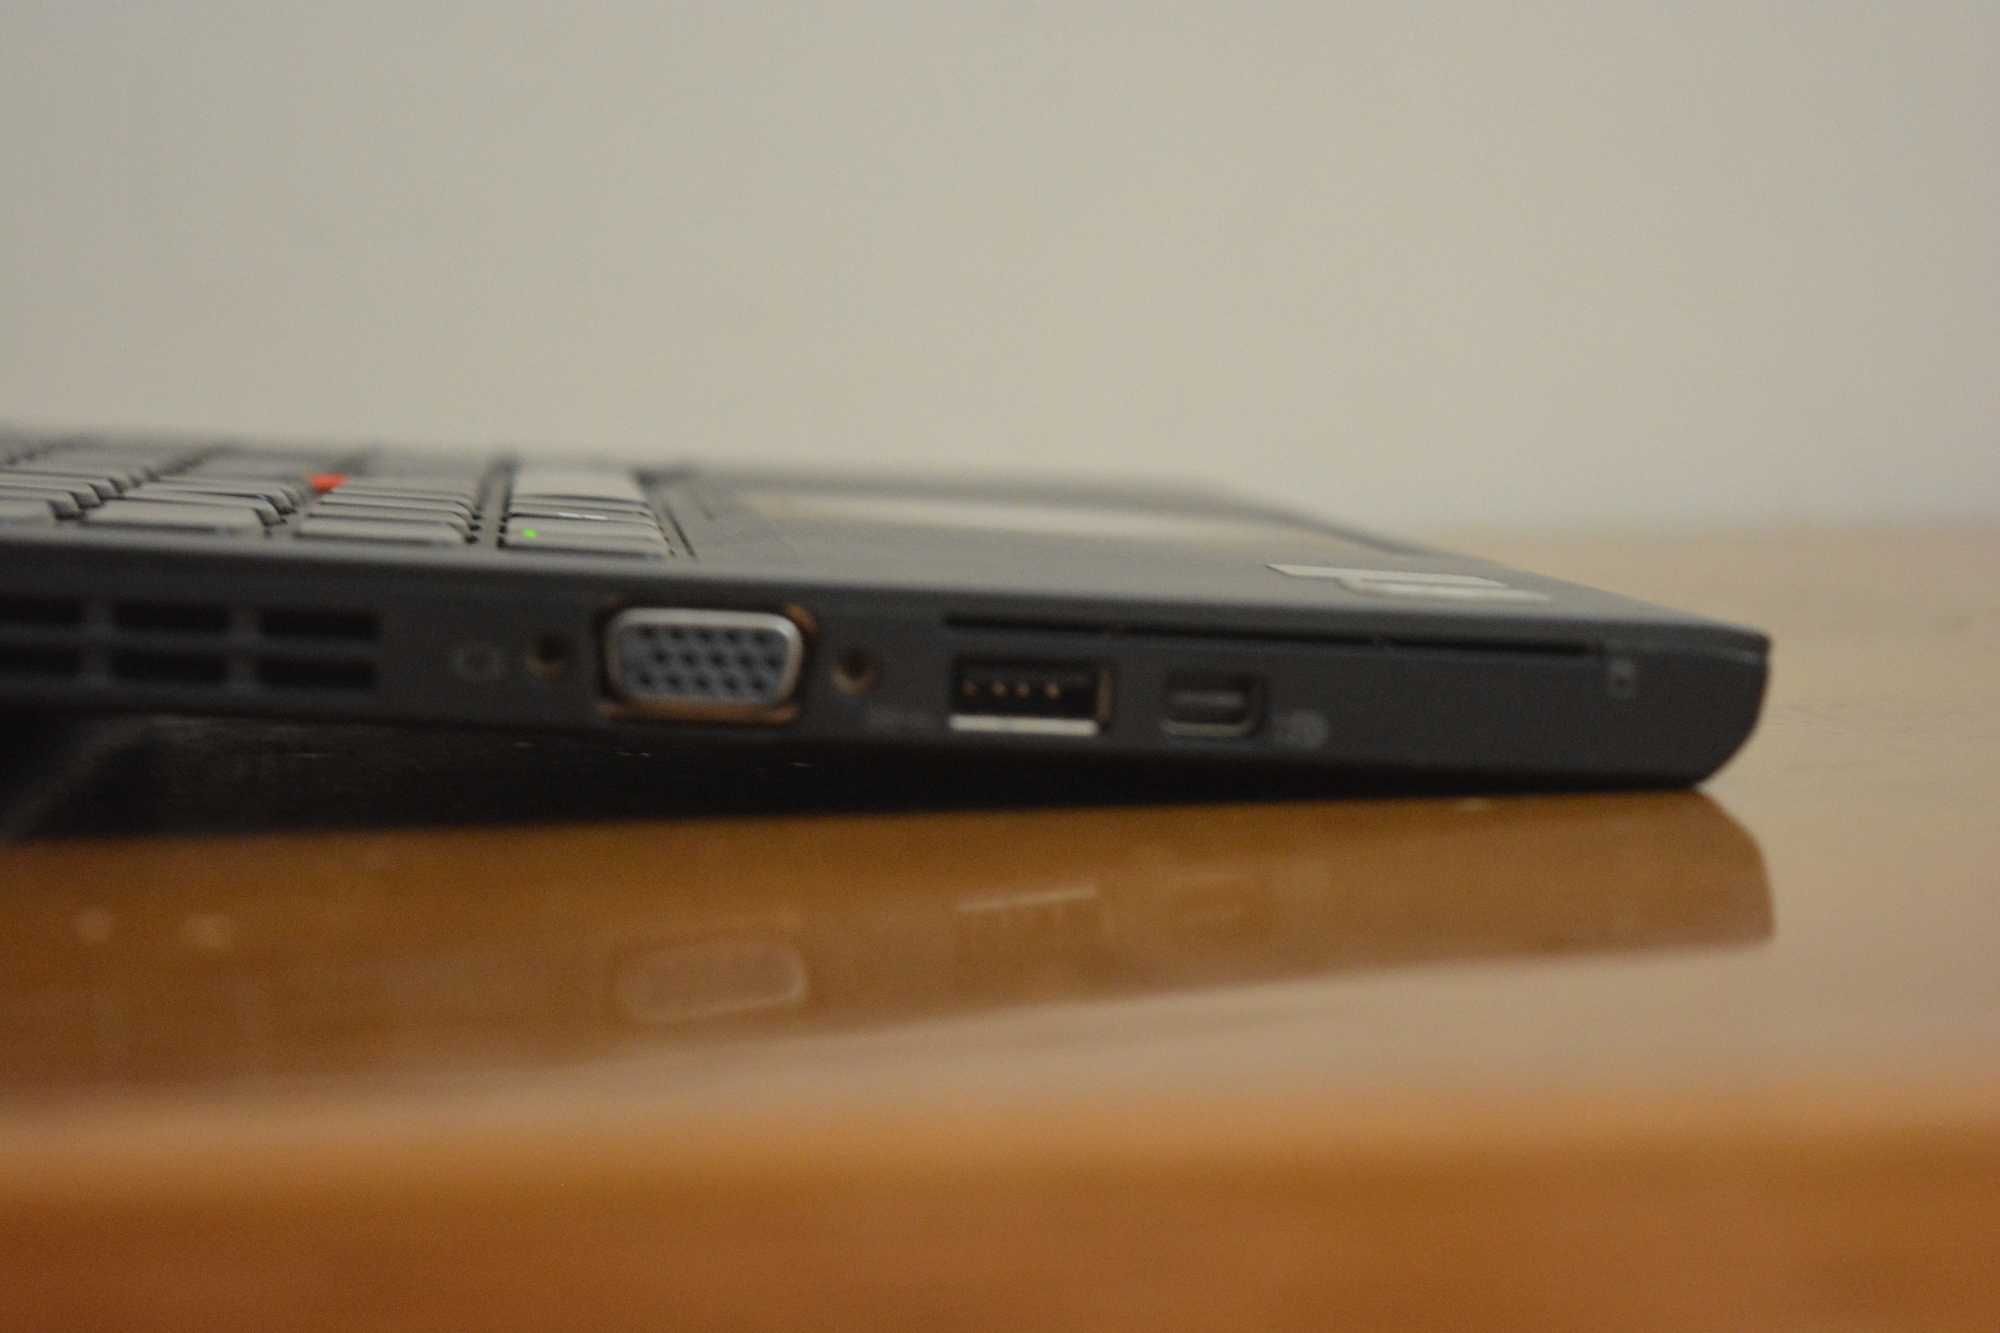 Portátil Lenovo Thinkpad X240 - I7-4600U | 8GB | 256GB